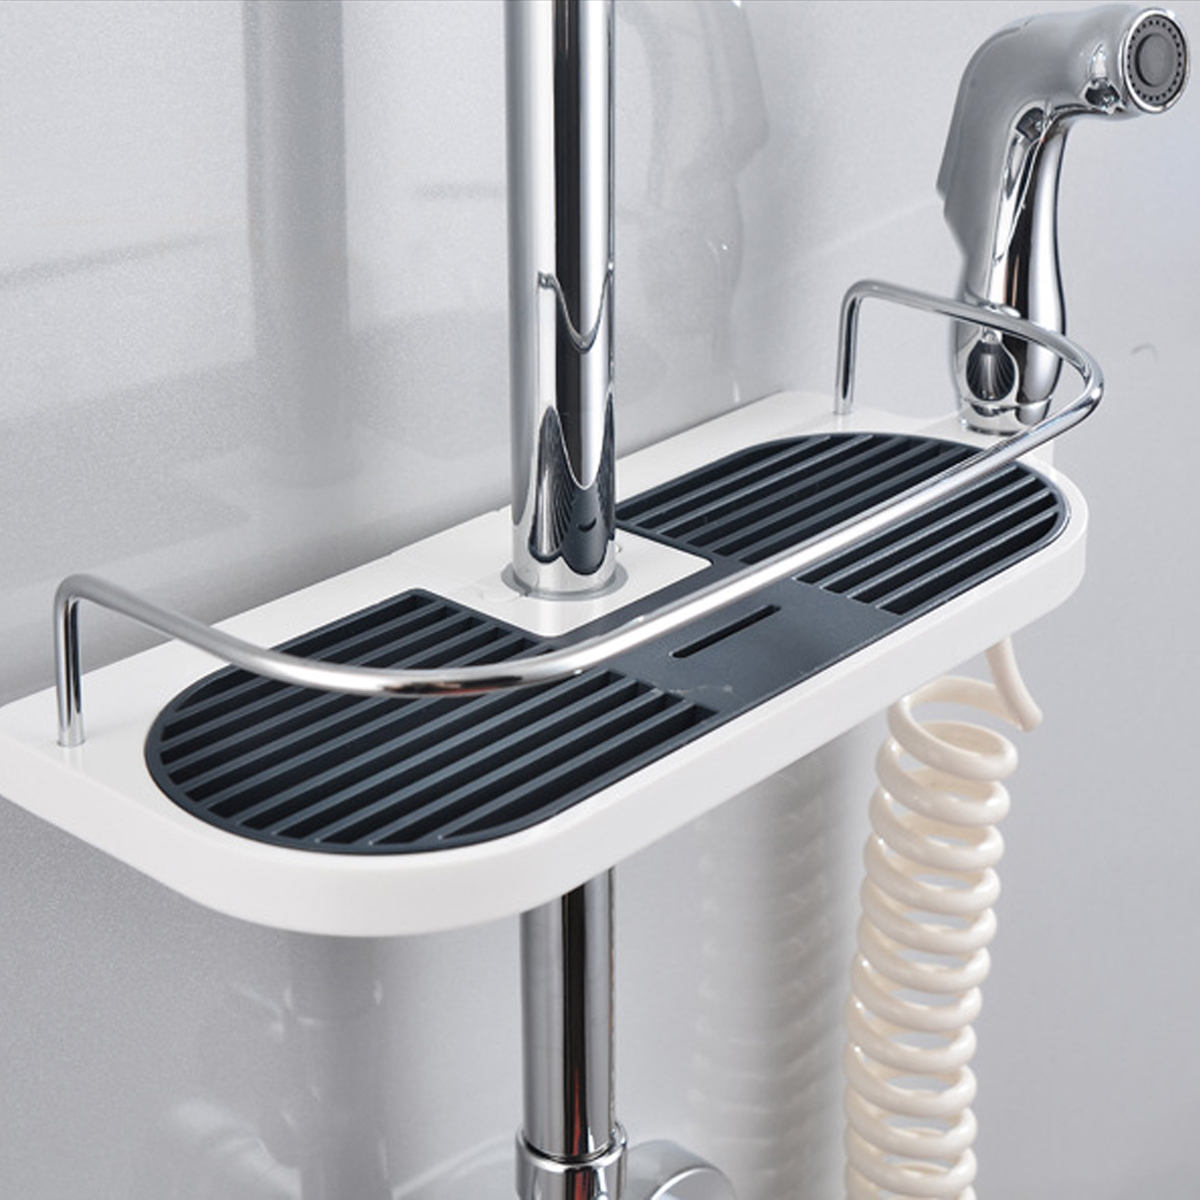 Bathroom-Pole-Shelf-Shower-Storage-Caddy-Rack-Organiser-Tray-Holder-Drain-Shelf-1165844-6